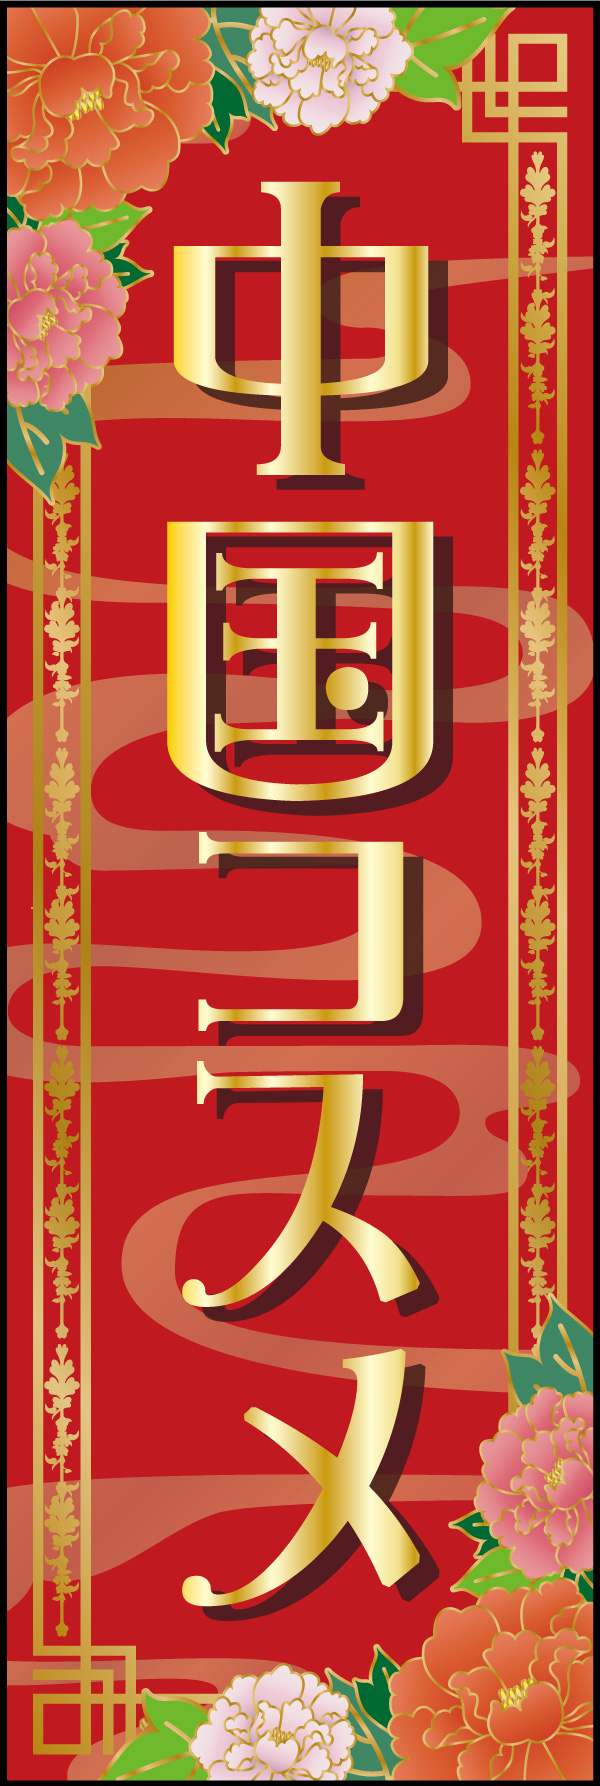 中国コスメ 01「中国コスメ 」ののぼりです。華やかさで目を引くのぼりを目指しました。(A.H) 